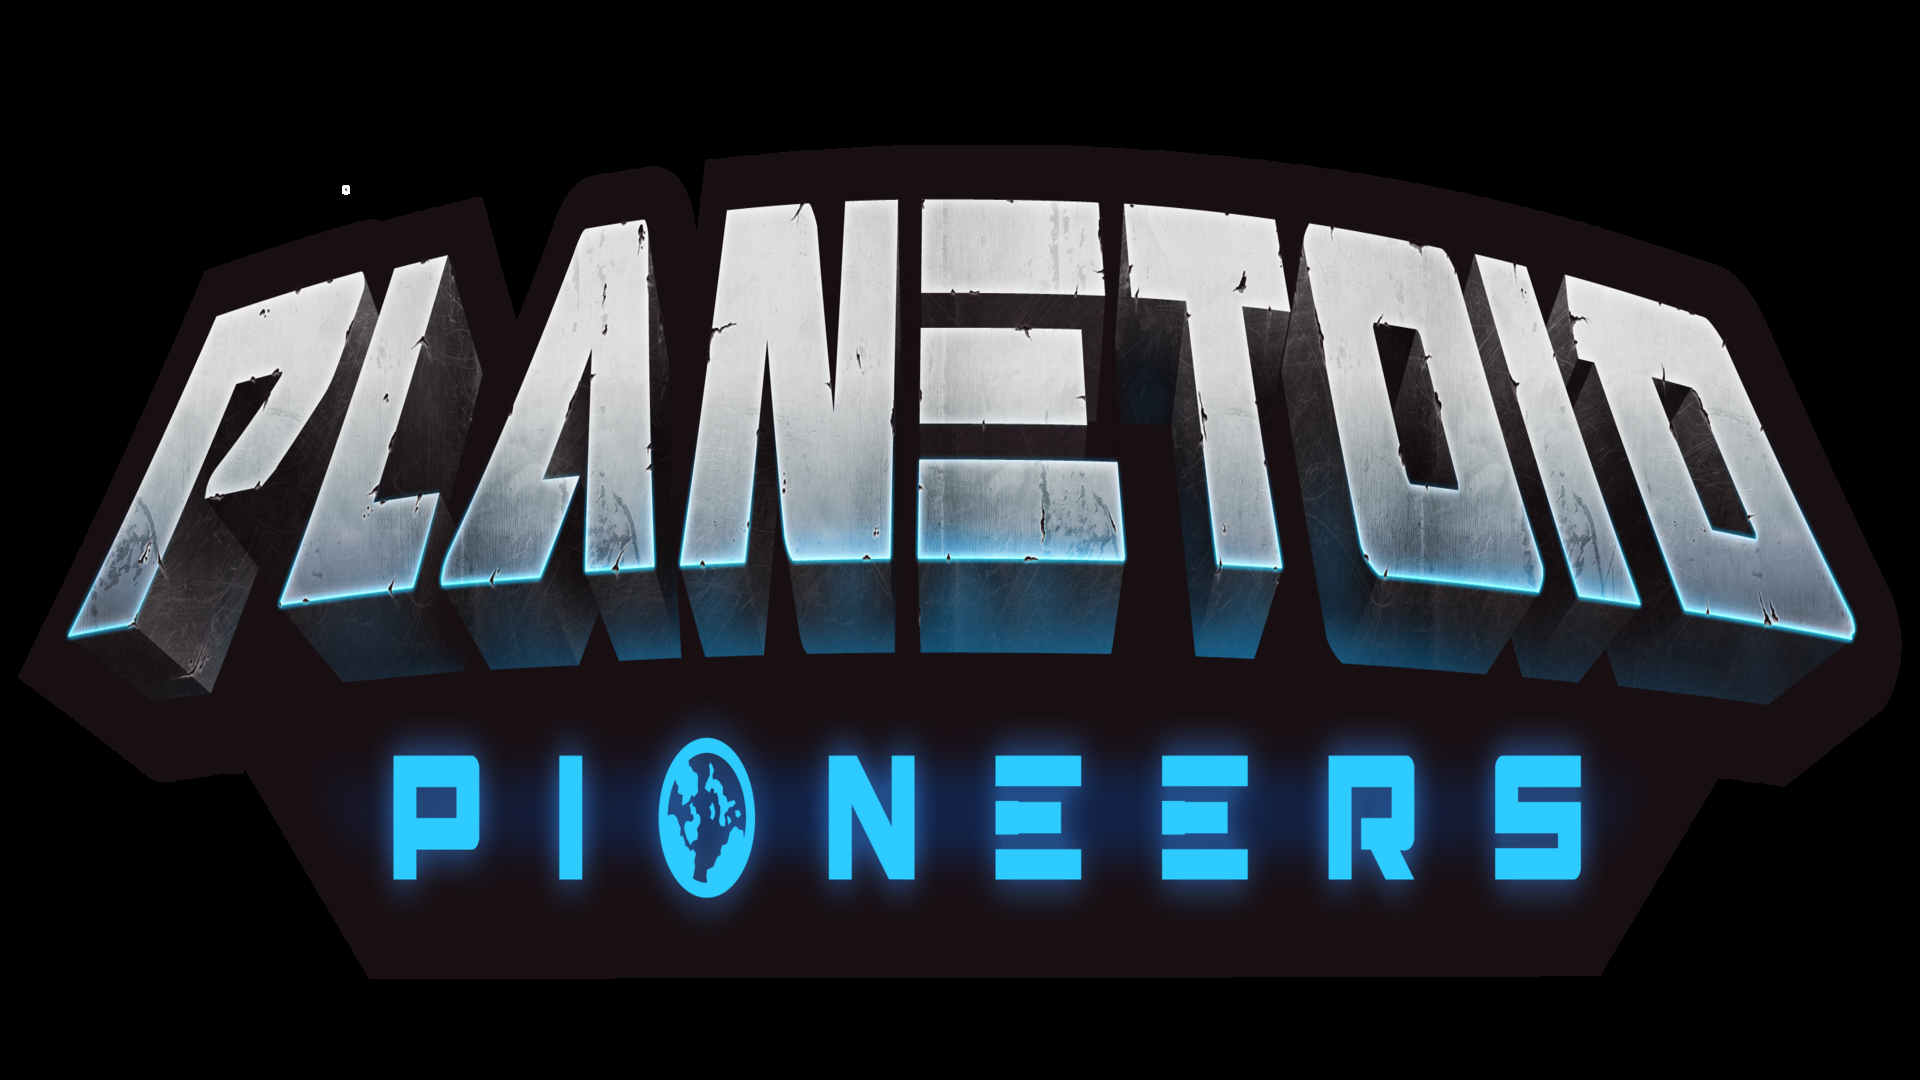 Planetoid Pioneers đã có mặt trên hệ thống Early Access của Steam - Tin Game